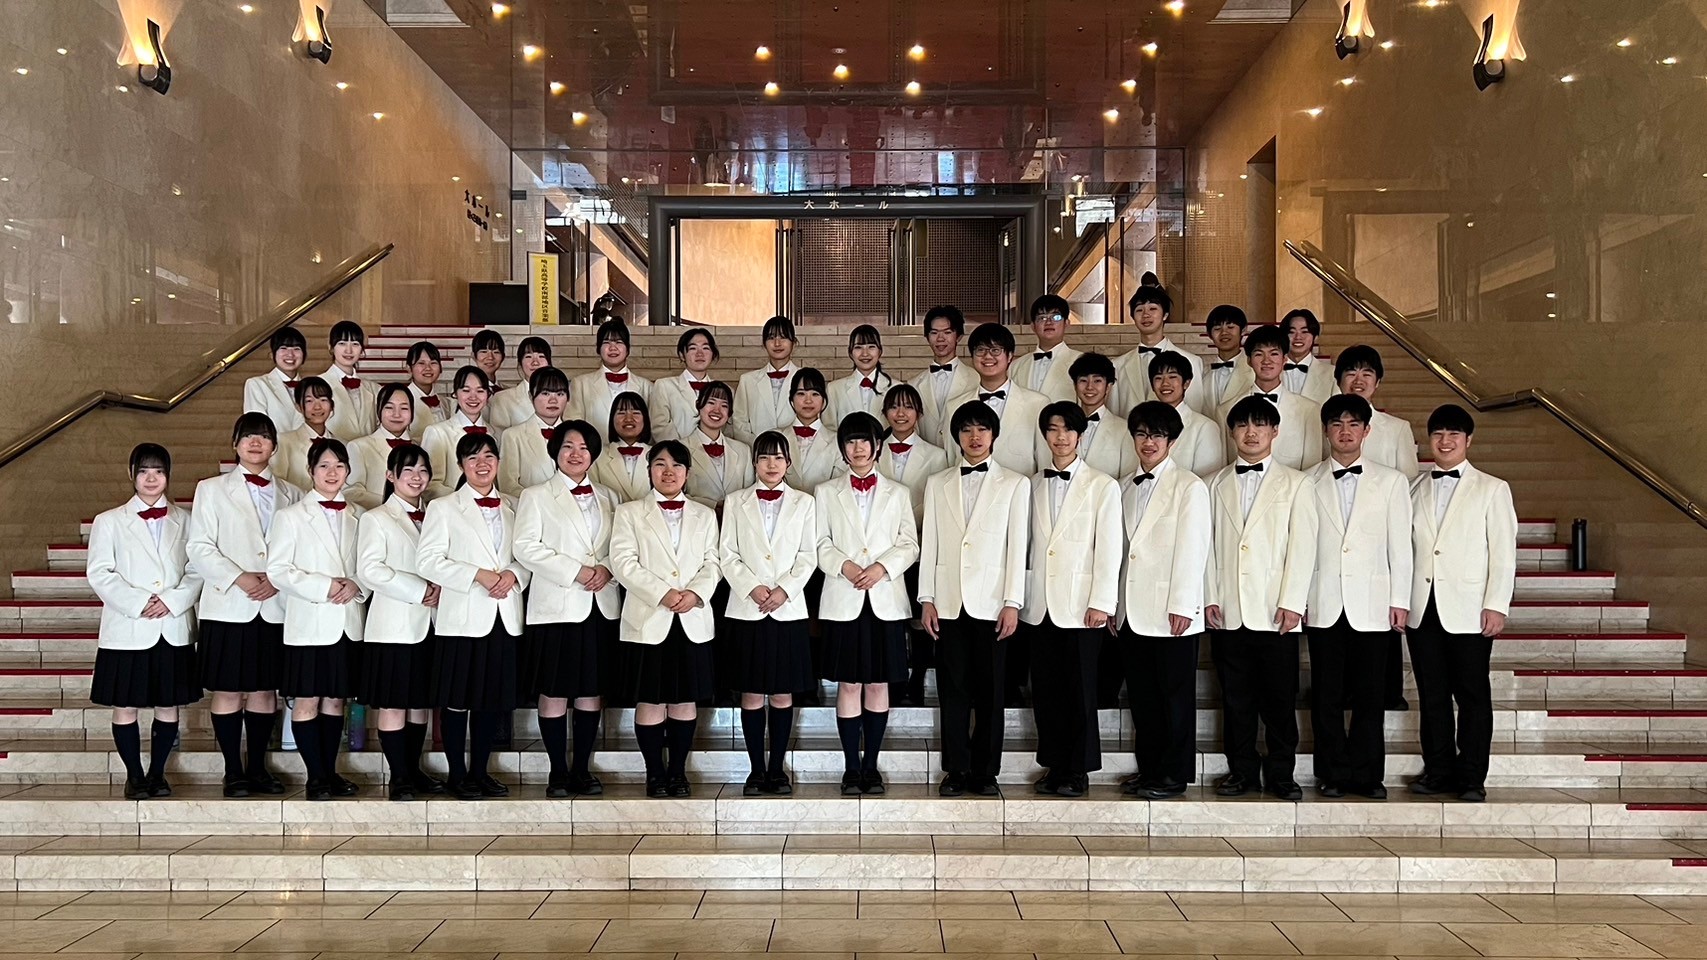 第40回埼玉県高等学校総合文化祭・高等学校音楽祭「南部地区」に出演しました